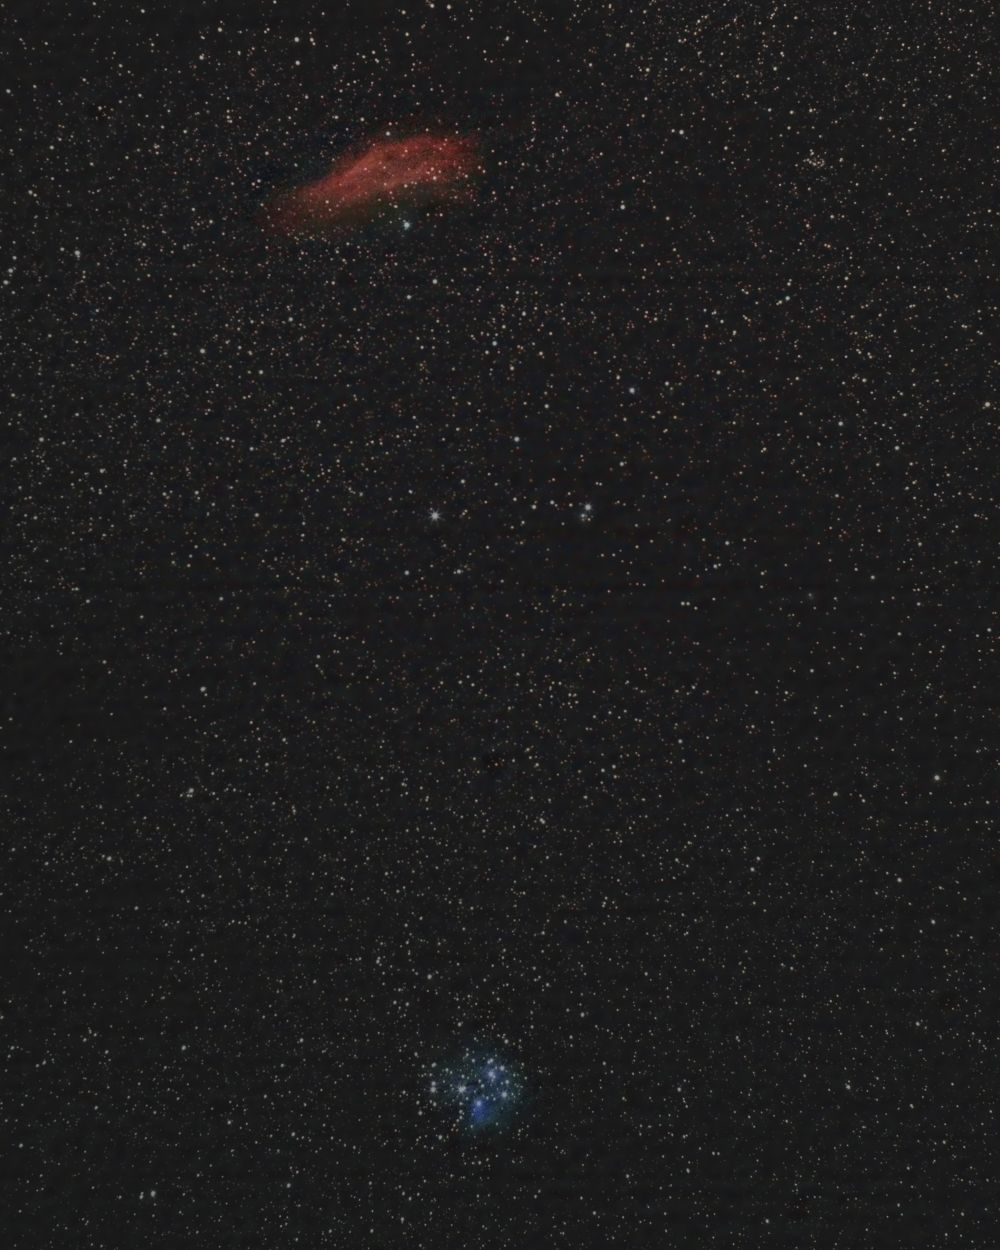  NGC 1499 & M45